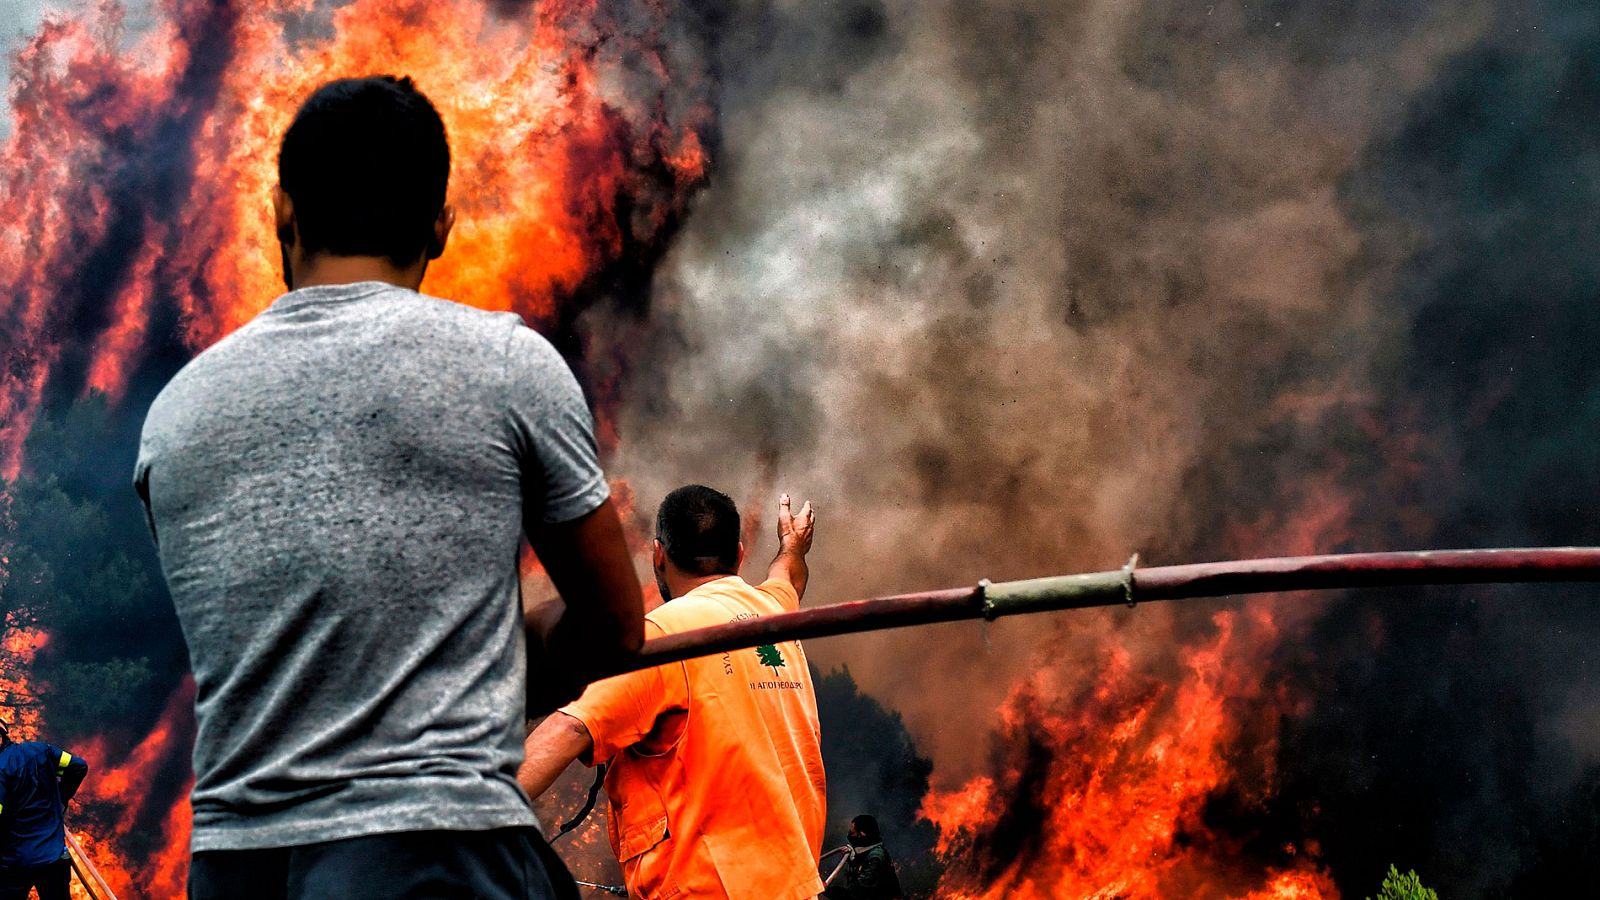 Incendios en Grecia | Sube a 91 la cifra de víctimas mortales